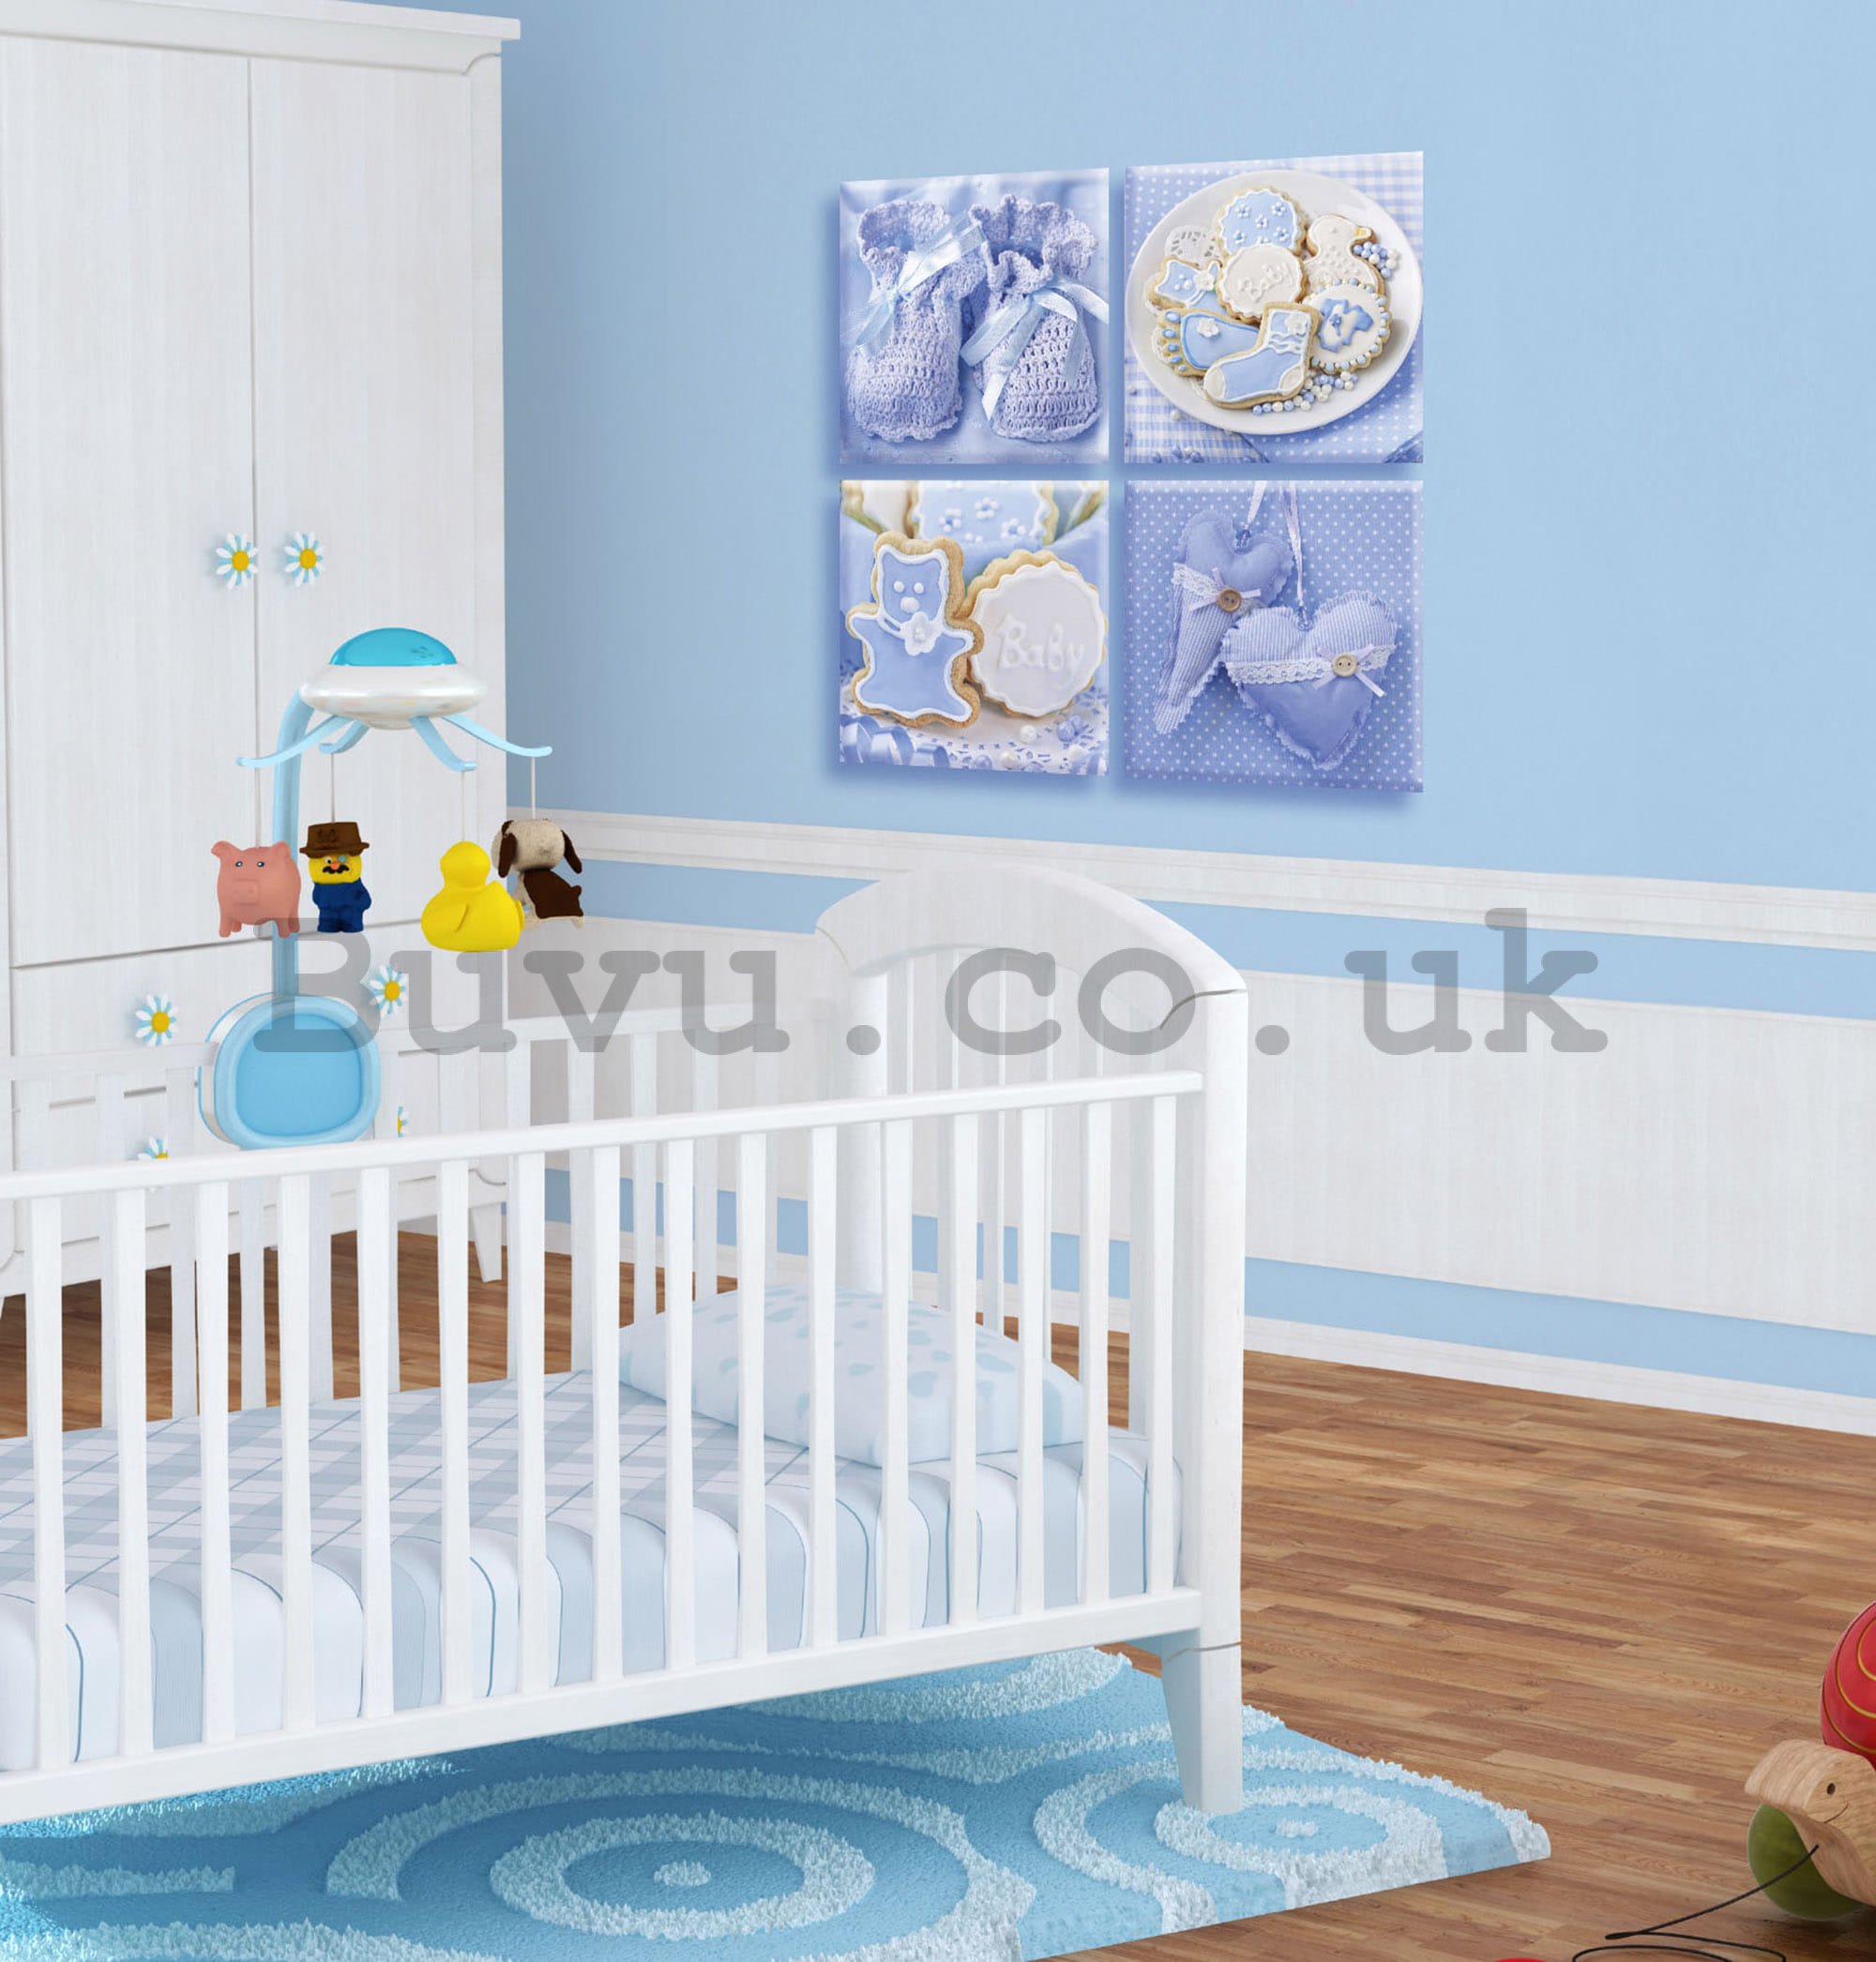 Painting on canvas: Blue baby motifs - set 4pcs 25x25cm